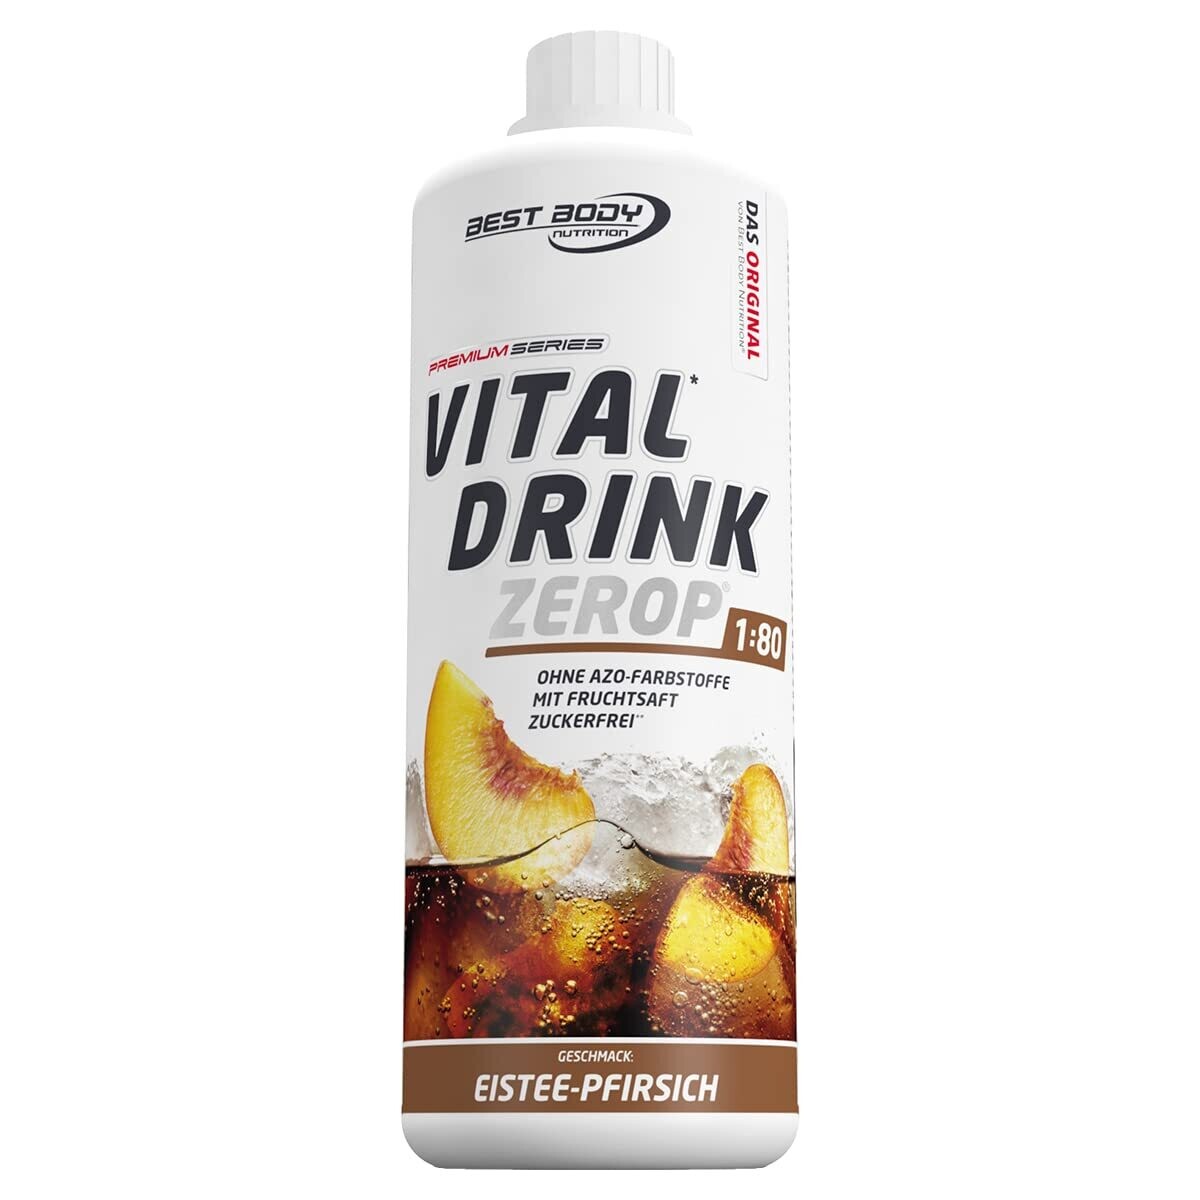 Getränkekonzentrat zuckerfrei Best Body Nutrition Vital Drink ZEROP® - Eistee-Pfirsich 1:80 1 Liter ergibt 80 Liter Fertiggetränk